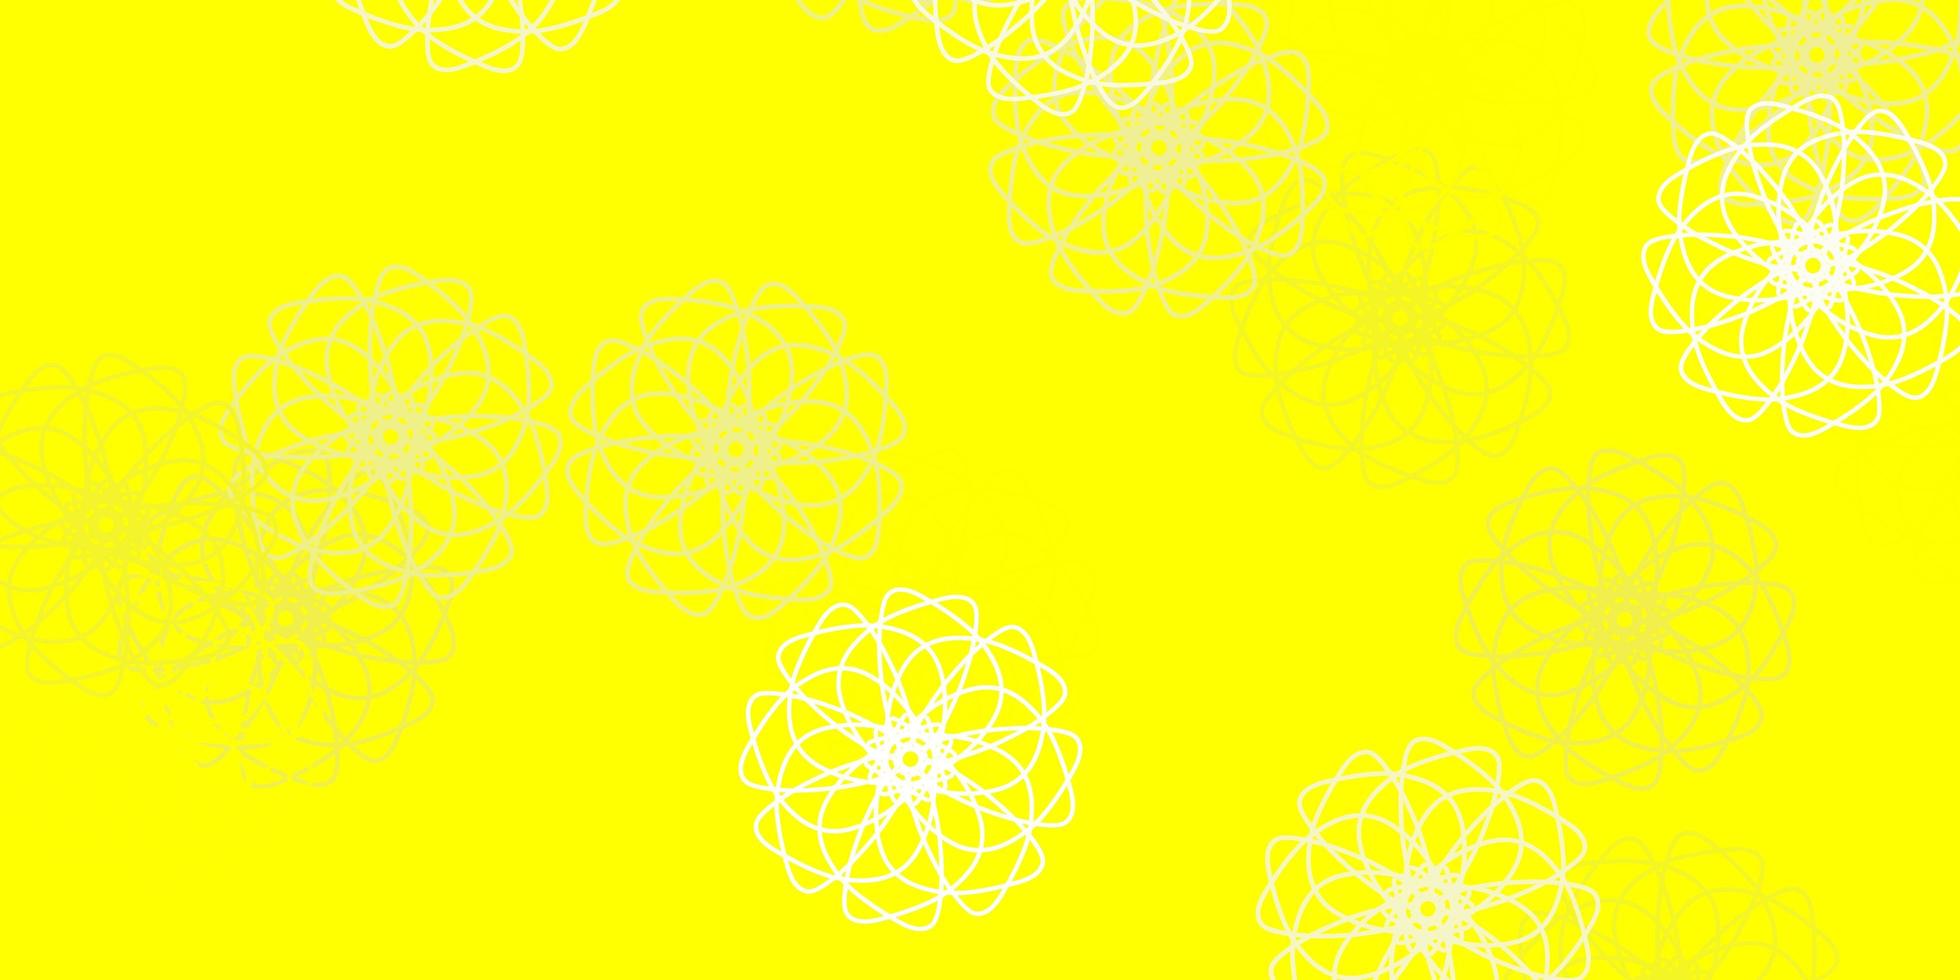 oeuvre naturelle de vecteur jaune clair avec des fleurs